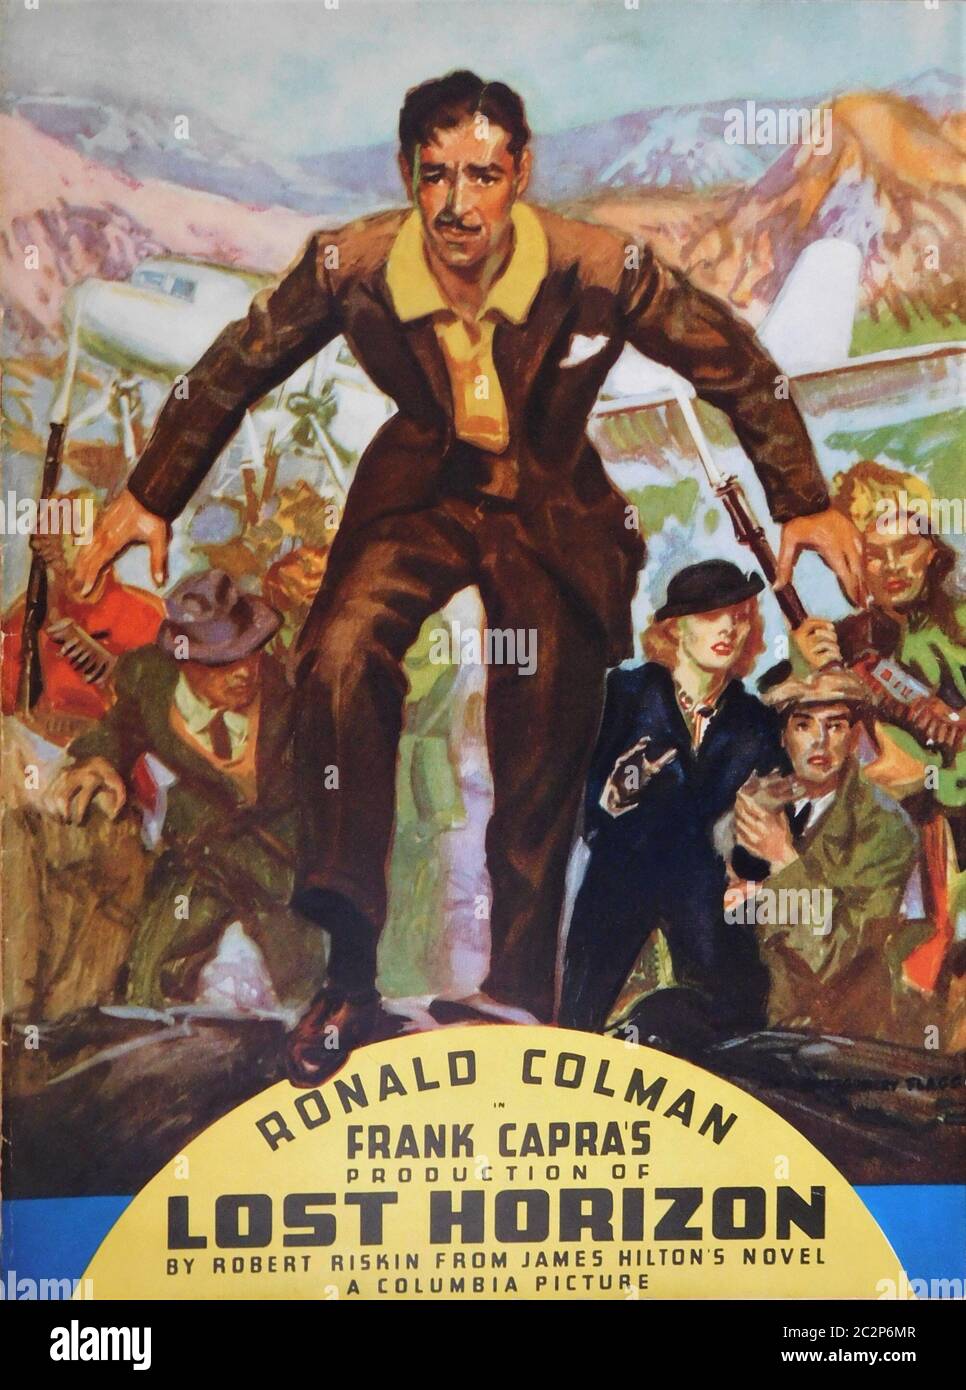 Ronald COLMAN come Robert Conway IN LOST HORIZON 1937 regista FRANK CAPRA romanzo JAMES HILTON sceneggiatura ROBERT RISKIN Columbia Pictures Foto Stock